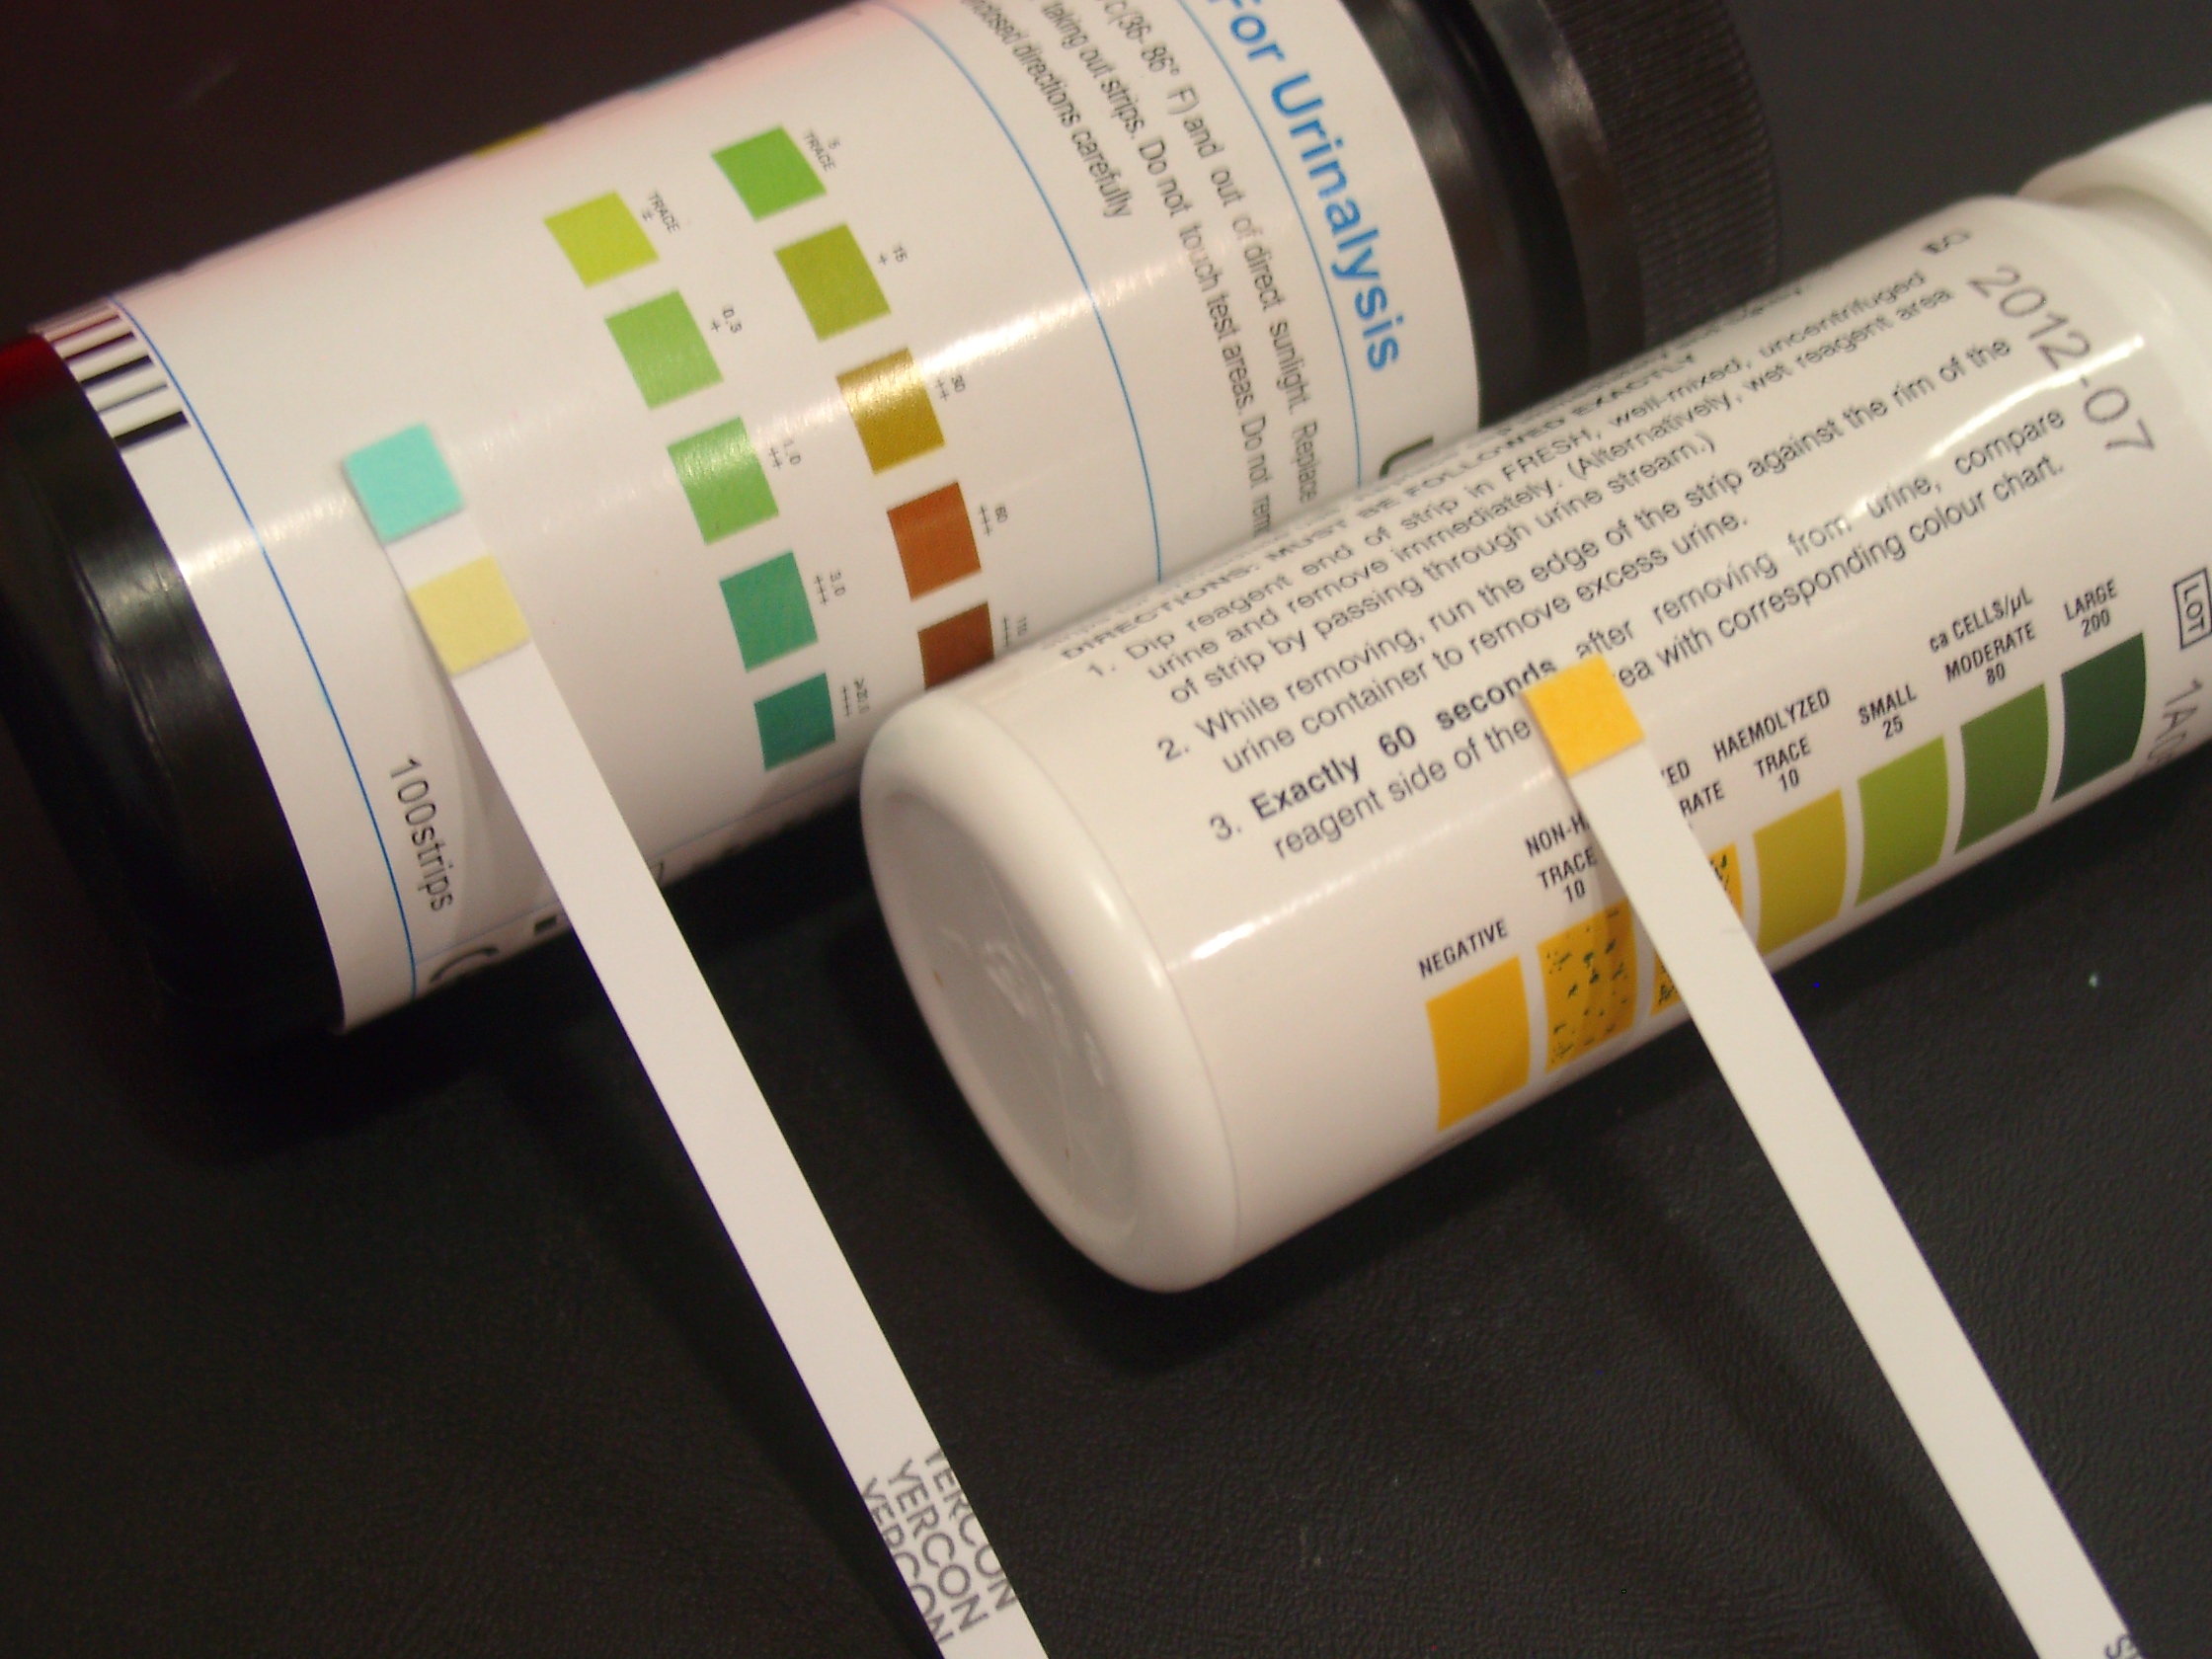 蛋白尿测试试纸是慢性肾病早期诊断较常用的测试方式